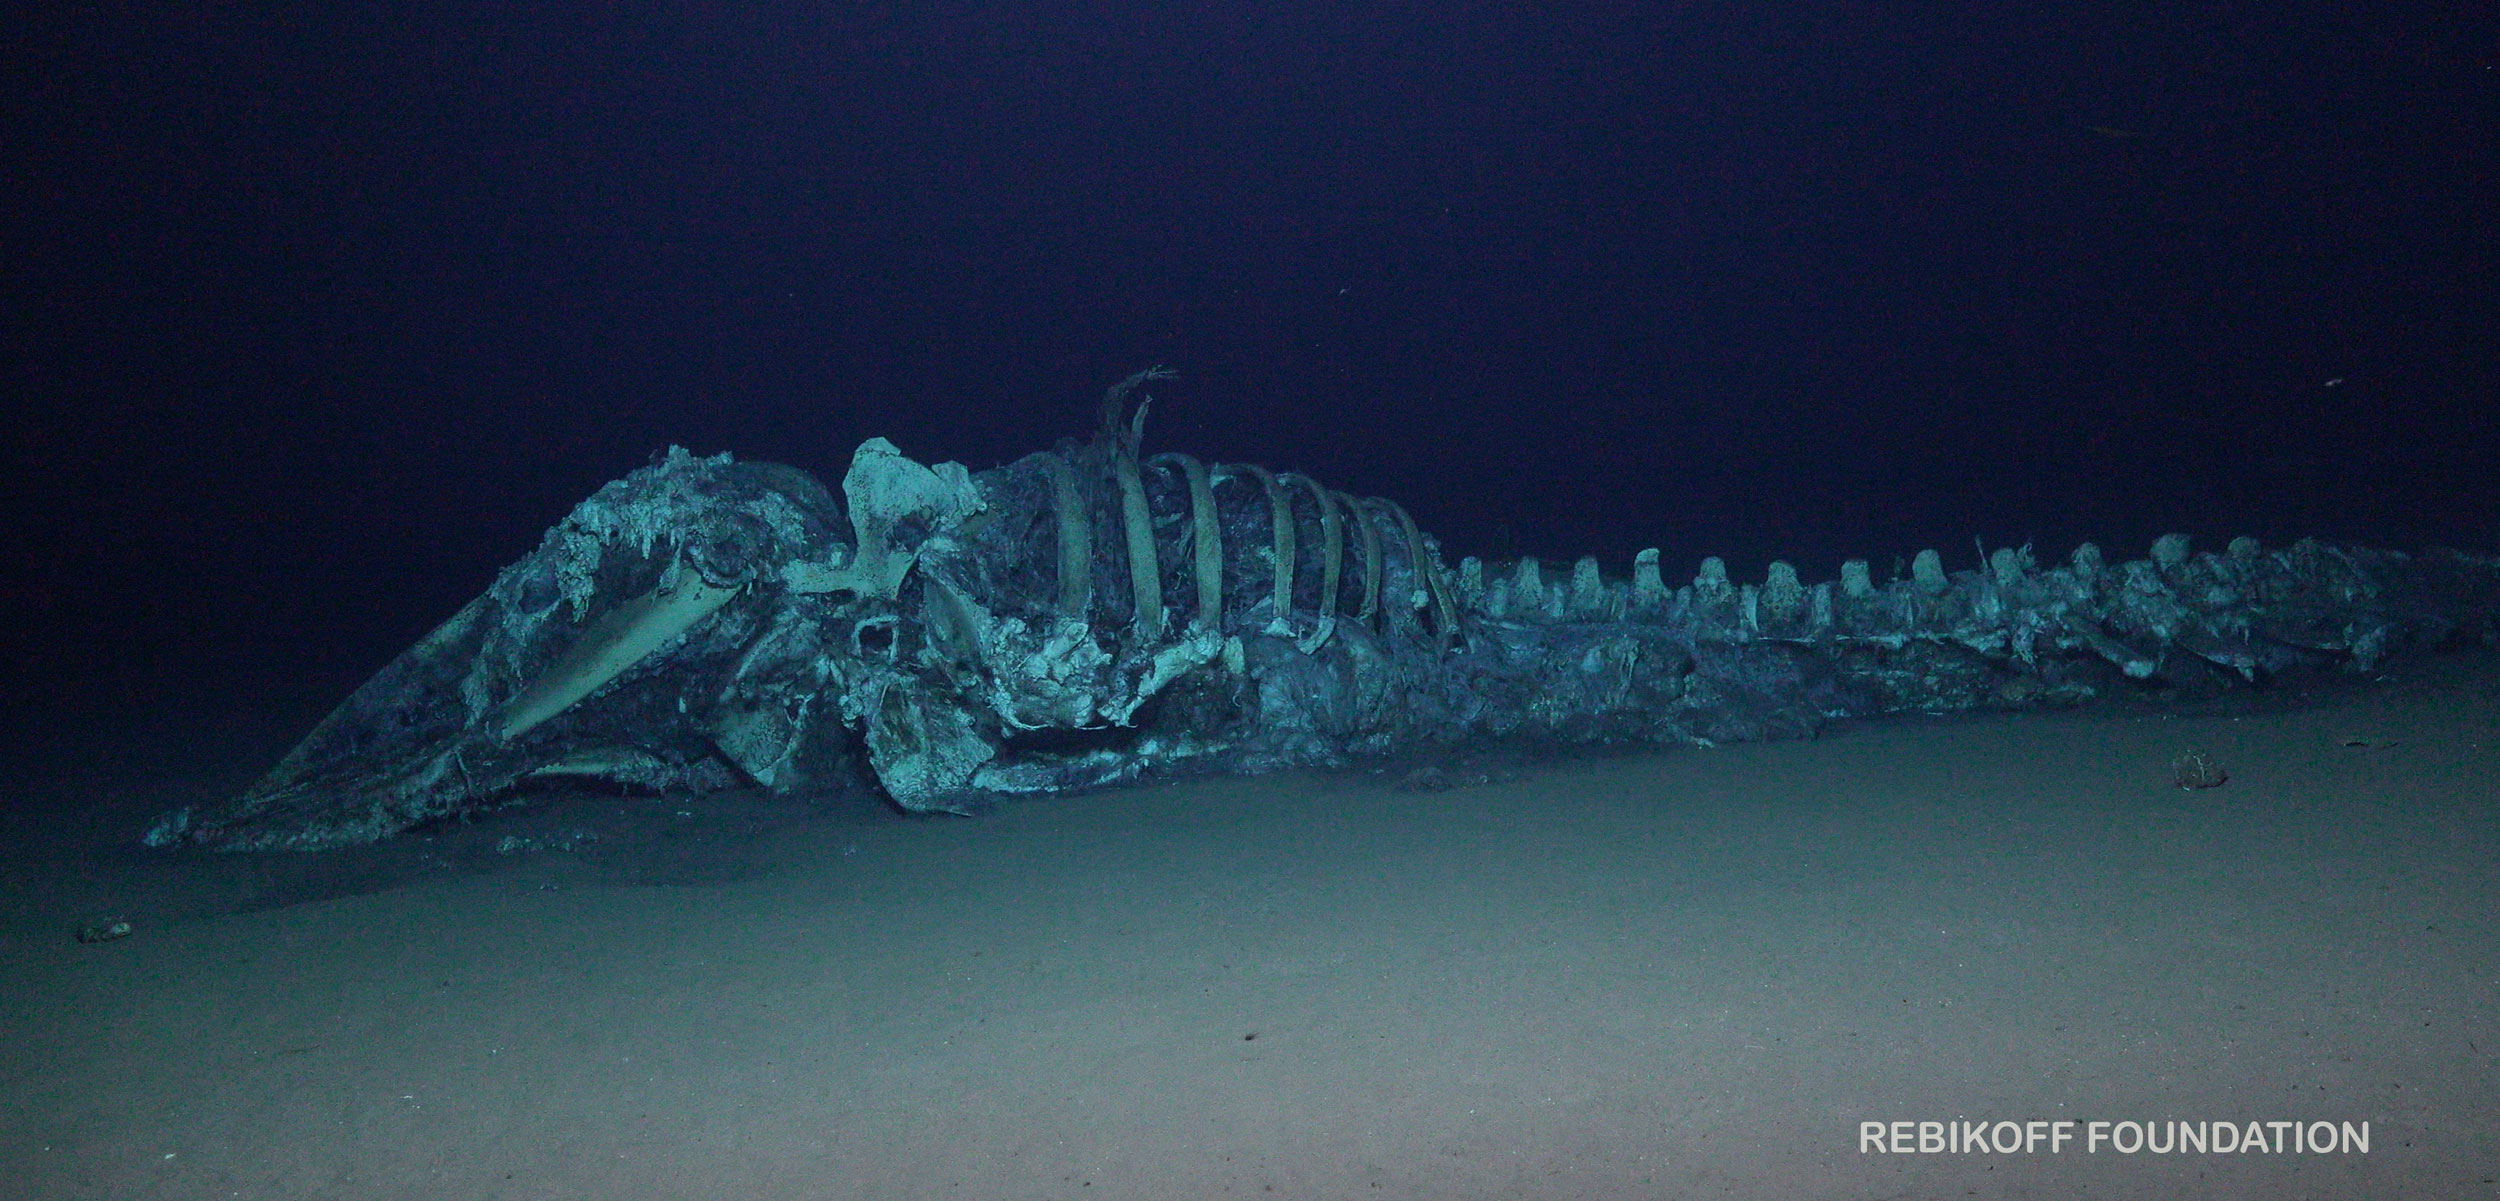 sperm whale carcass on the bottom of the ocean